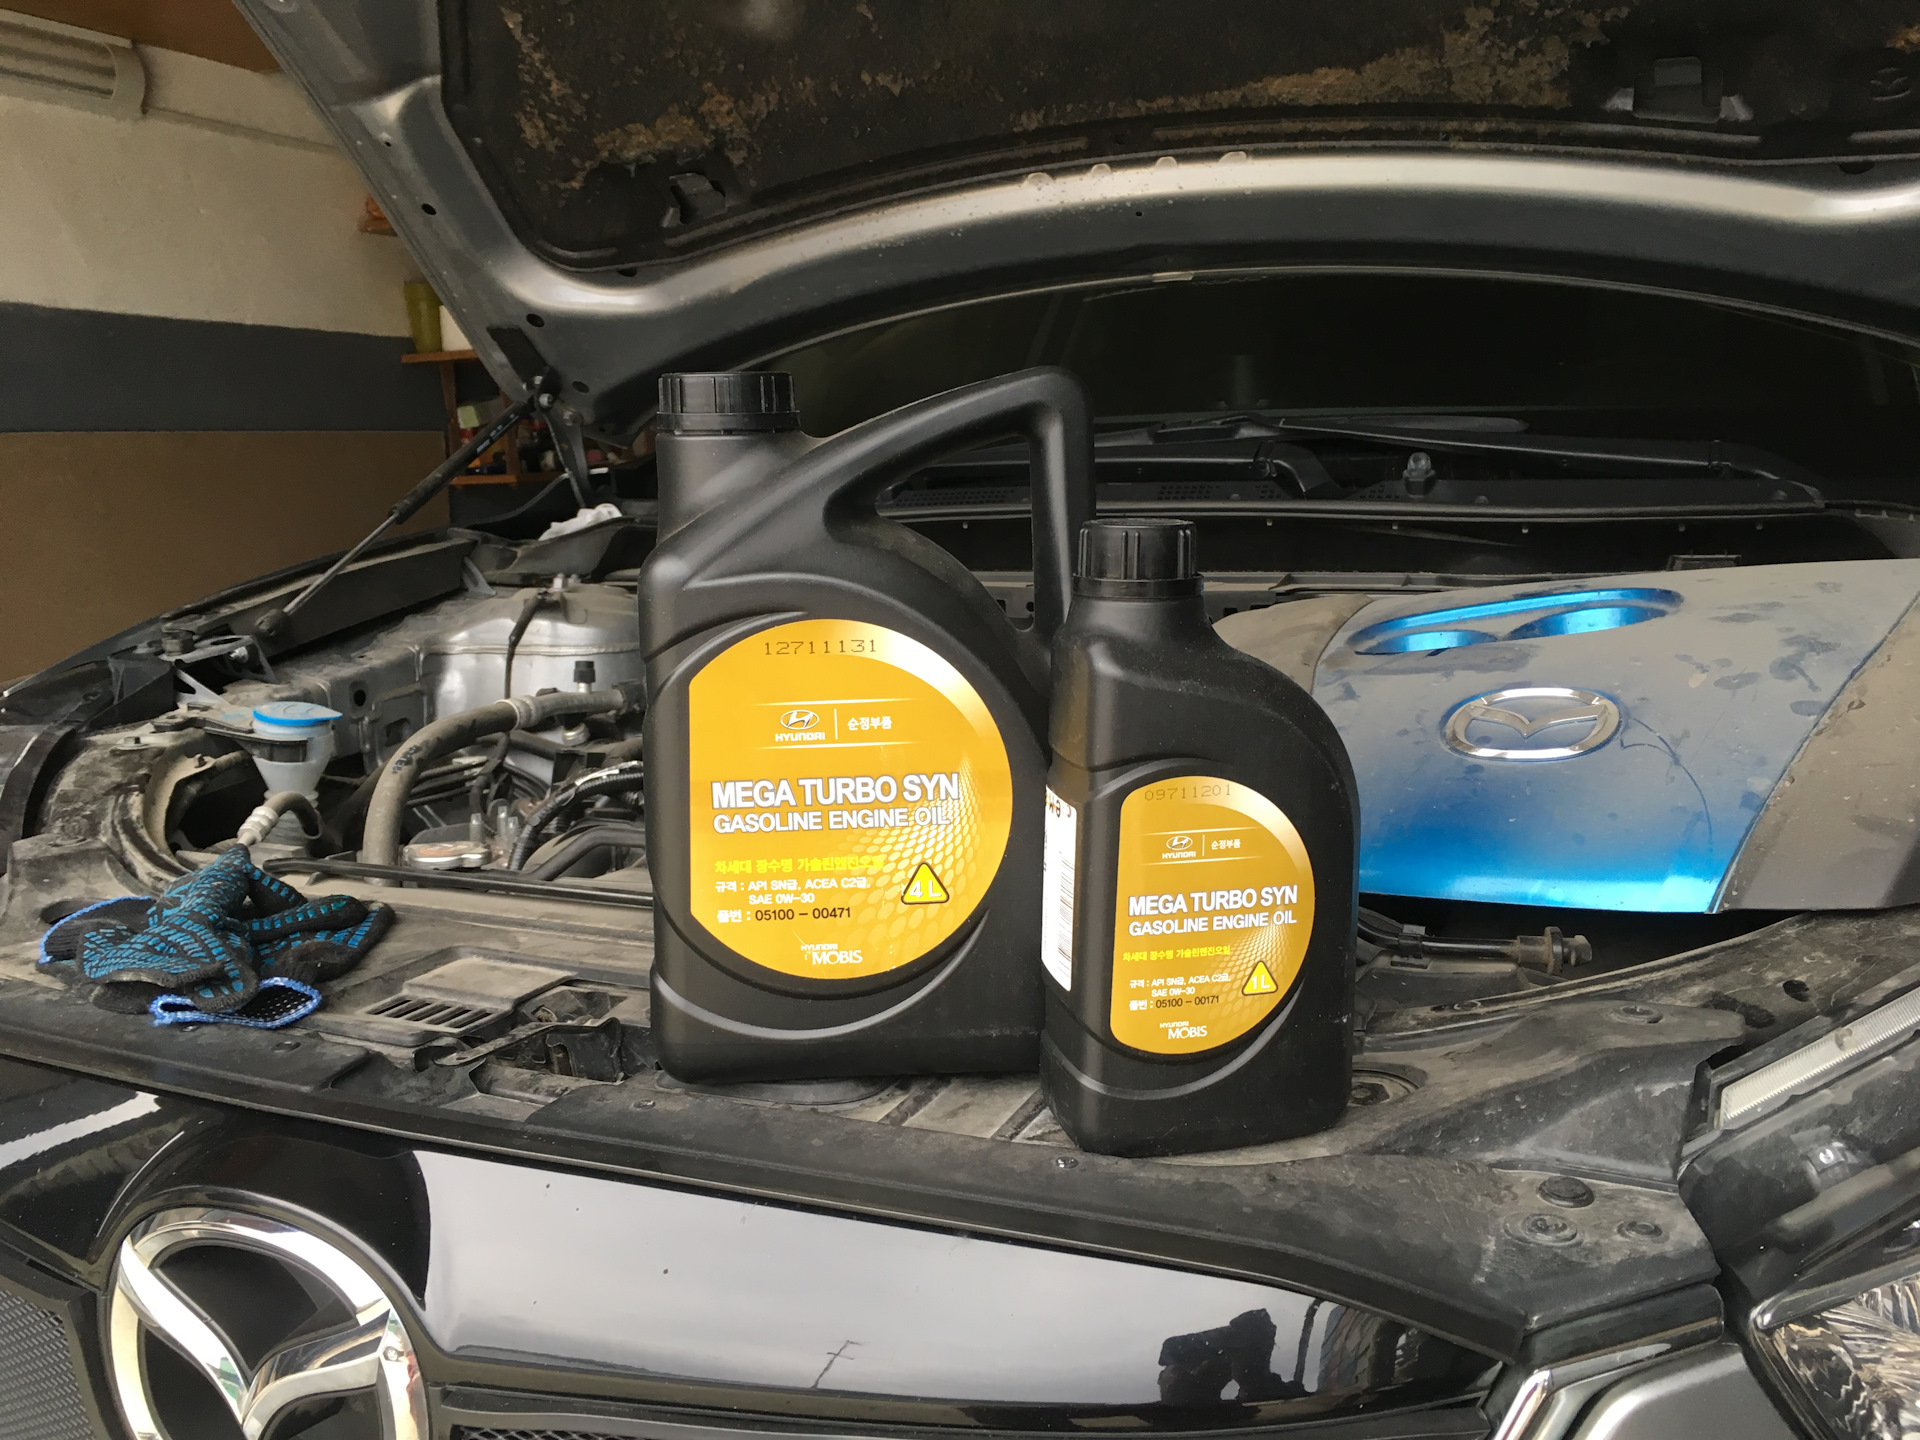 Масло в мазда сх5 2.0. 05100-00471. Замена моторного масла в Мазда сх5 1. Замена масла Mazda CX-5 2017. Замена датчика давление моторного масла Мазда сх5 1.